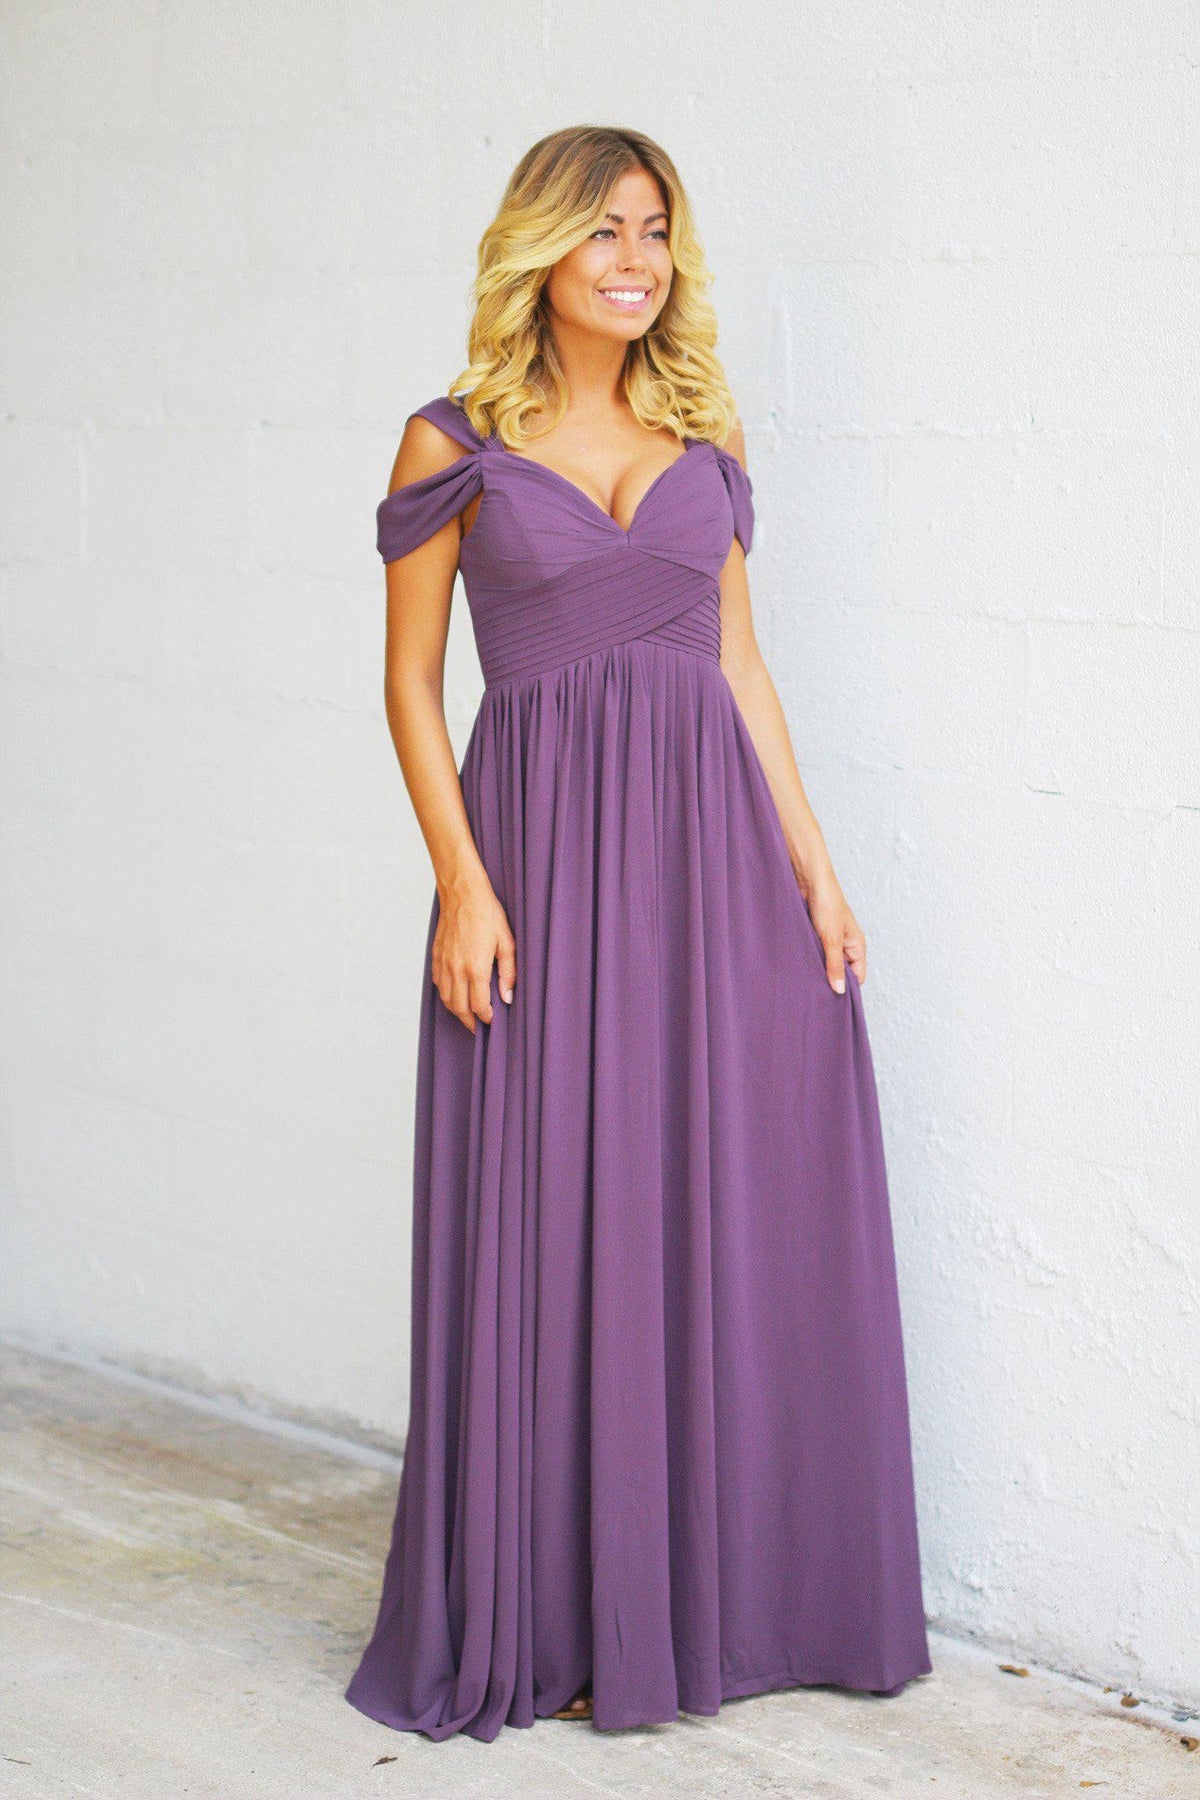 Dusty Purple Off Shoulder Maxi Dress | Dusty Purple Maxi Dress ...